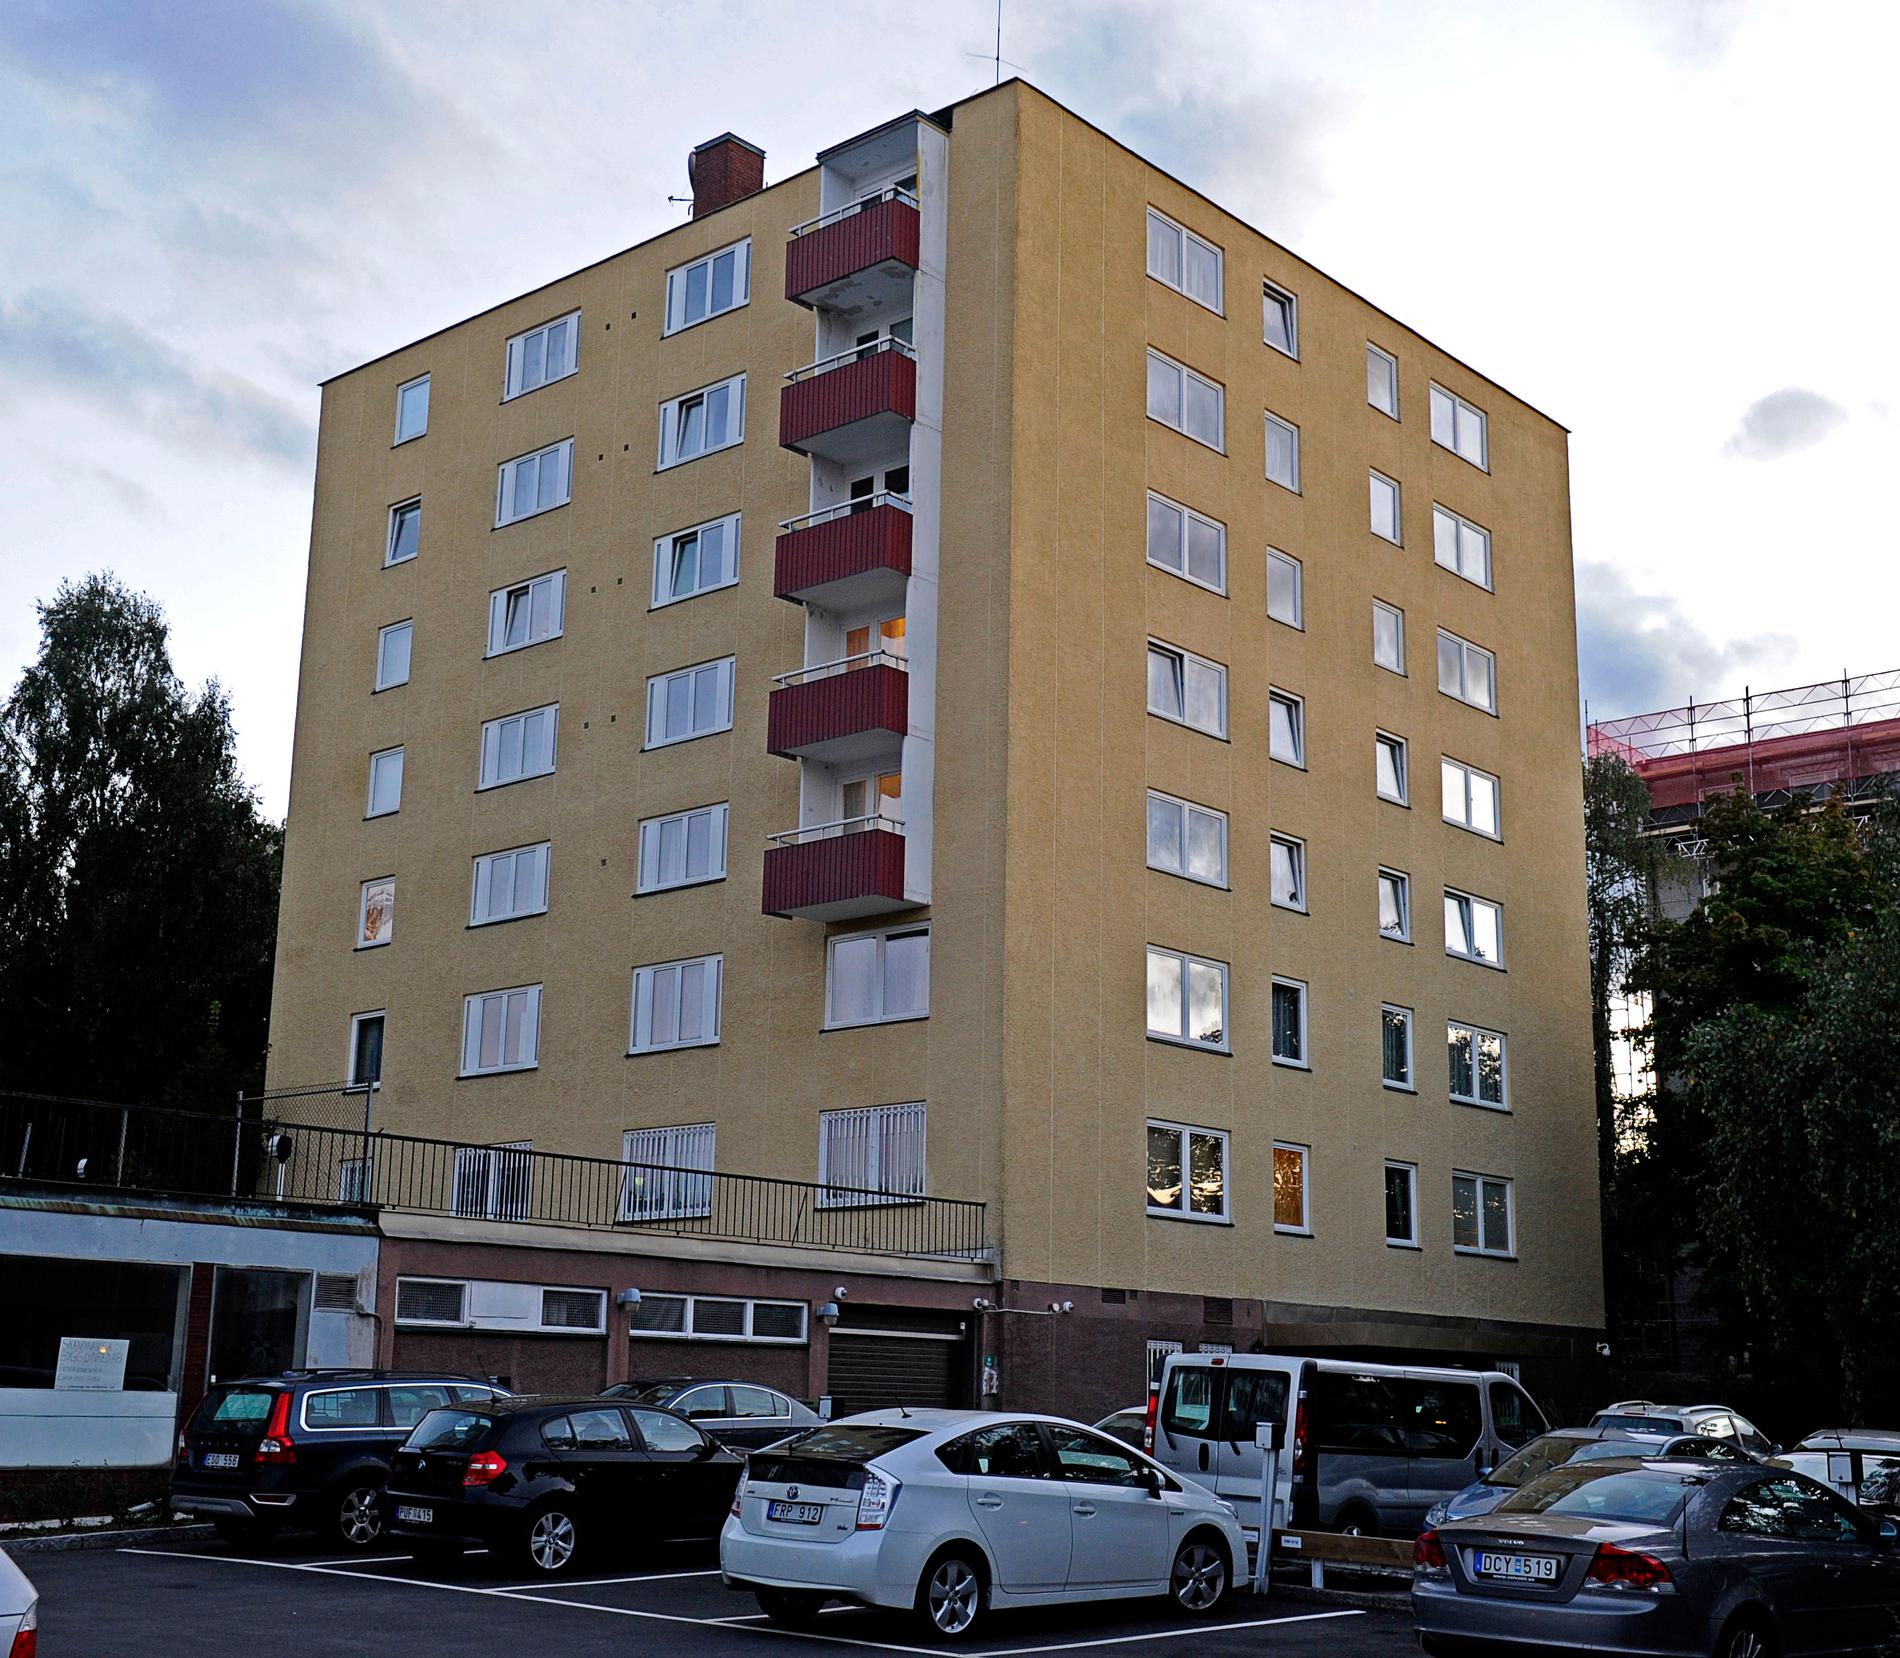 Det väldigt omdiskuterade ”ryska huset” på Lidingö i Stockholm.